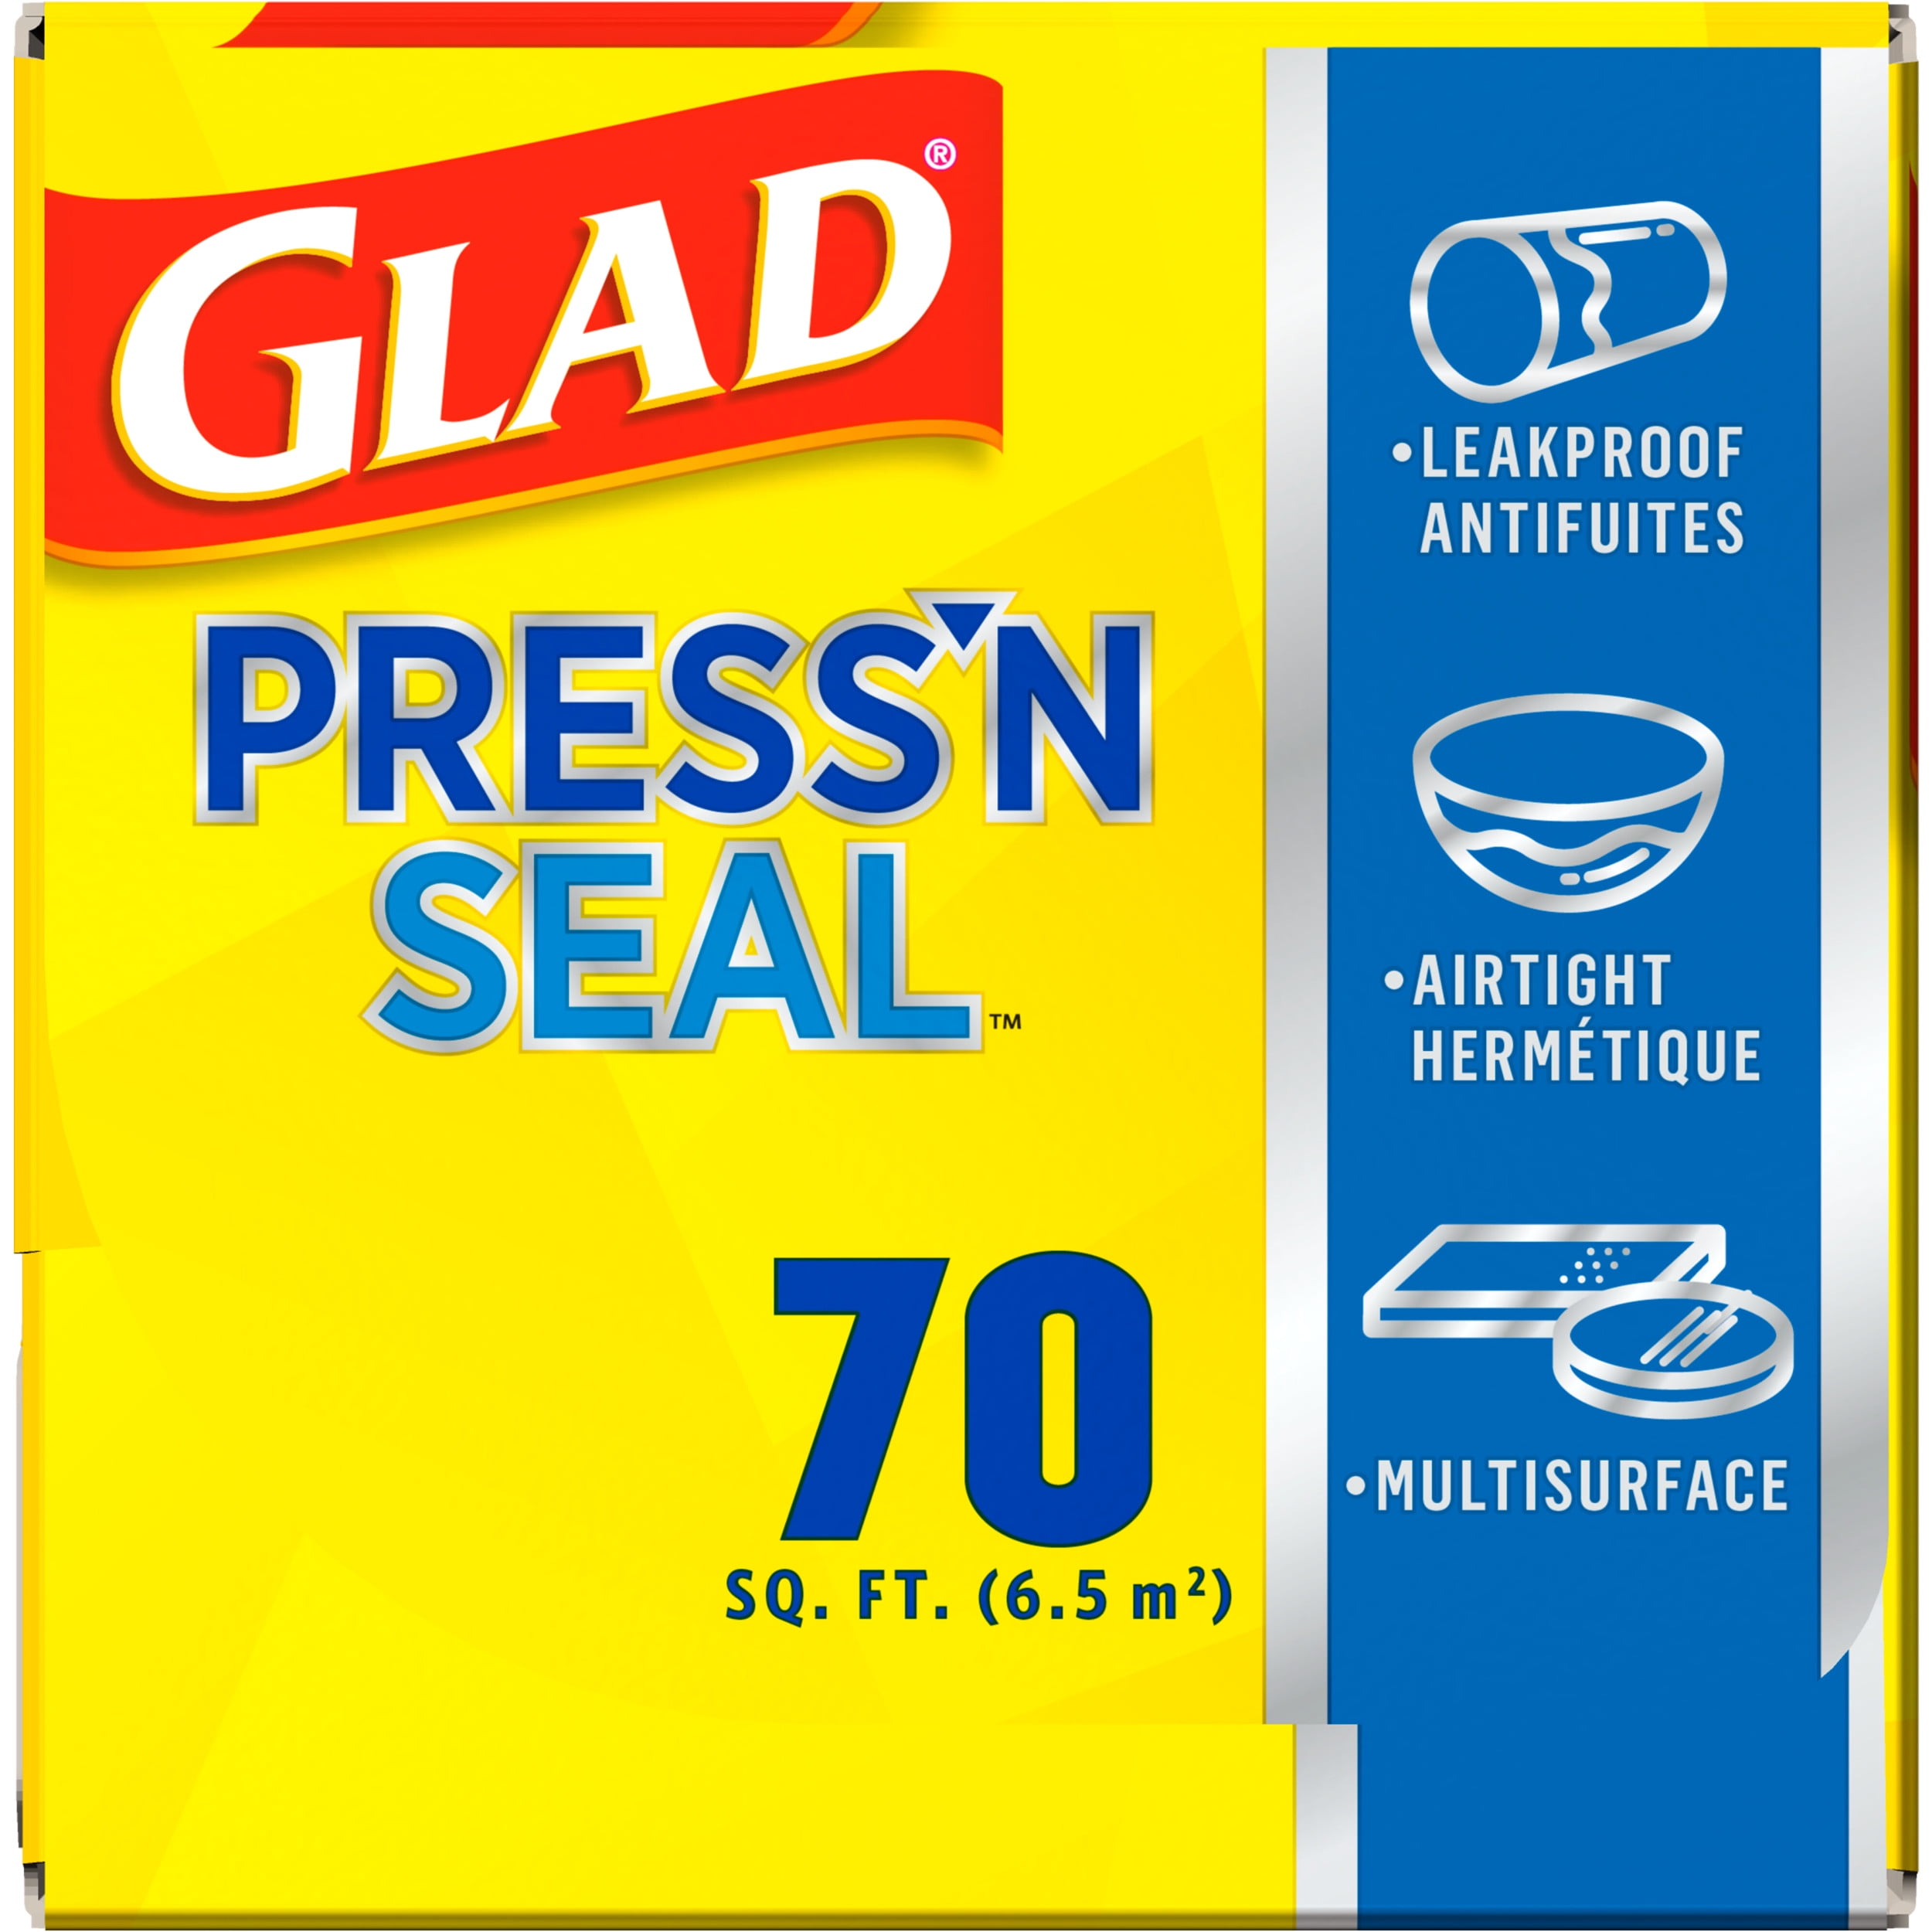 Glad Press'n Seal Food Plastic Wrap 2 x (280 sq. ft., 2 pk.x 140